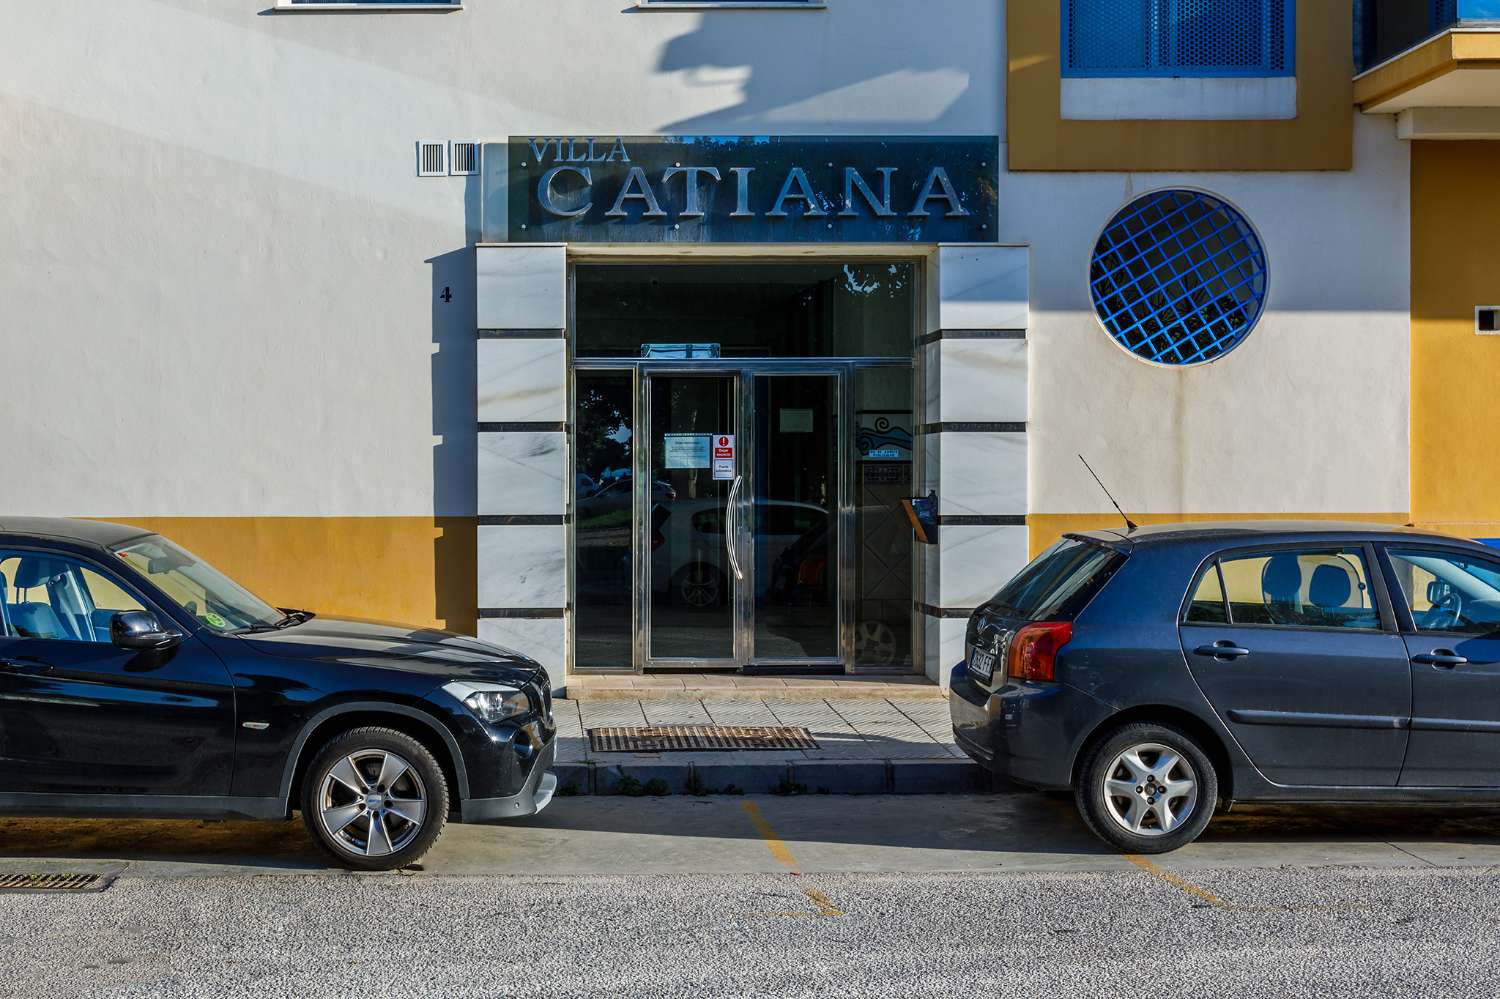 A&N Villa Catiana